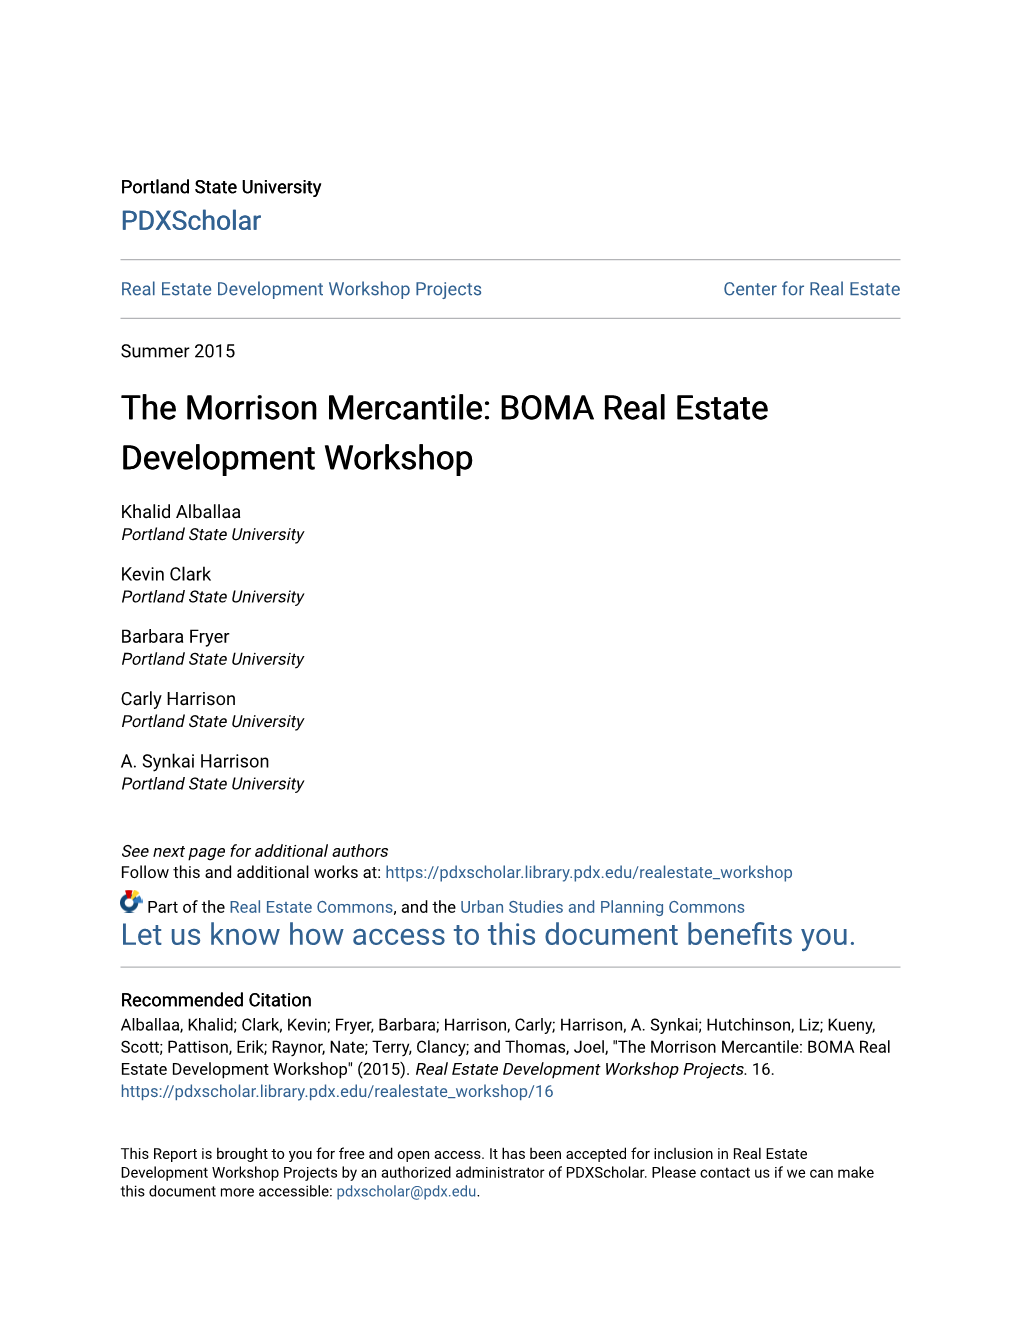 BOMA Real Estate Development Workshop